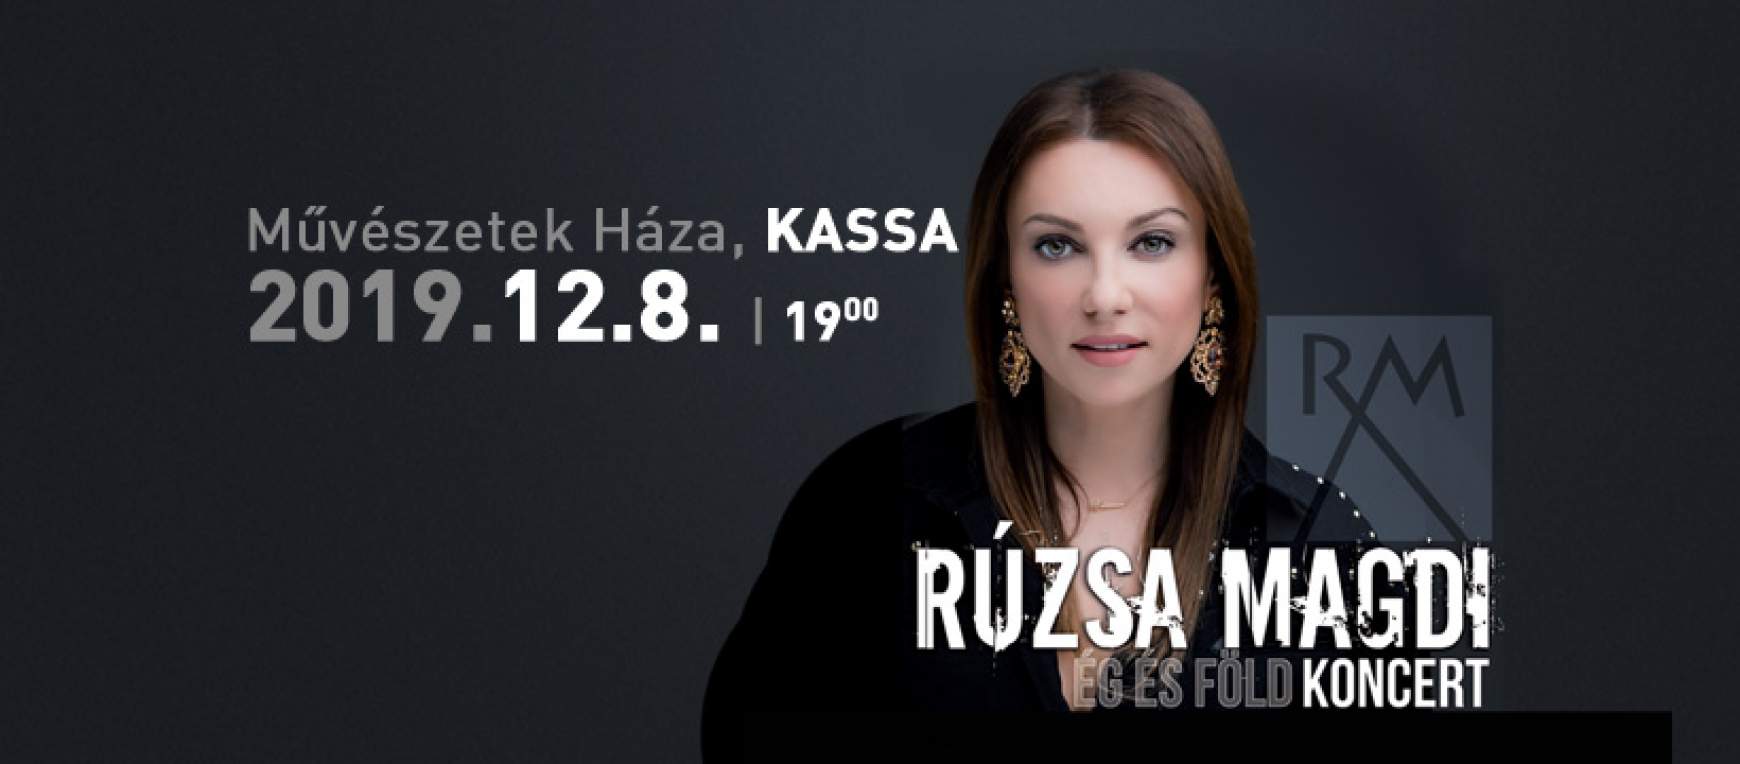 Rúzsa Magdi koncert Kassa